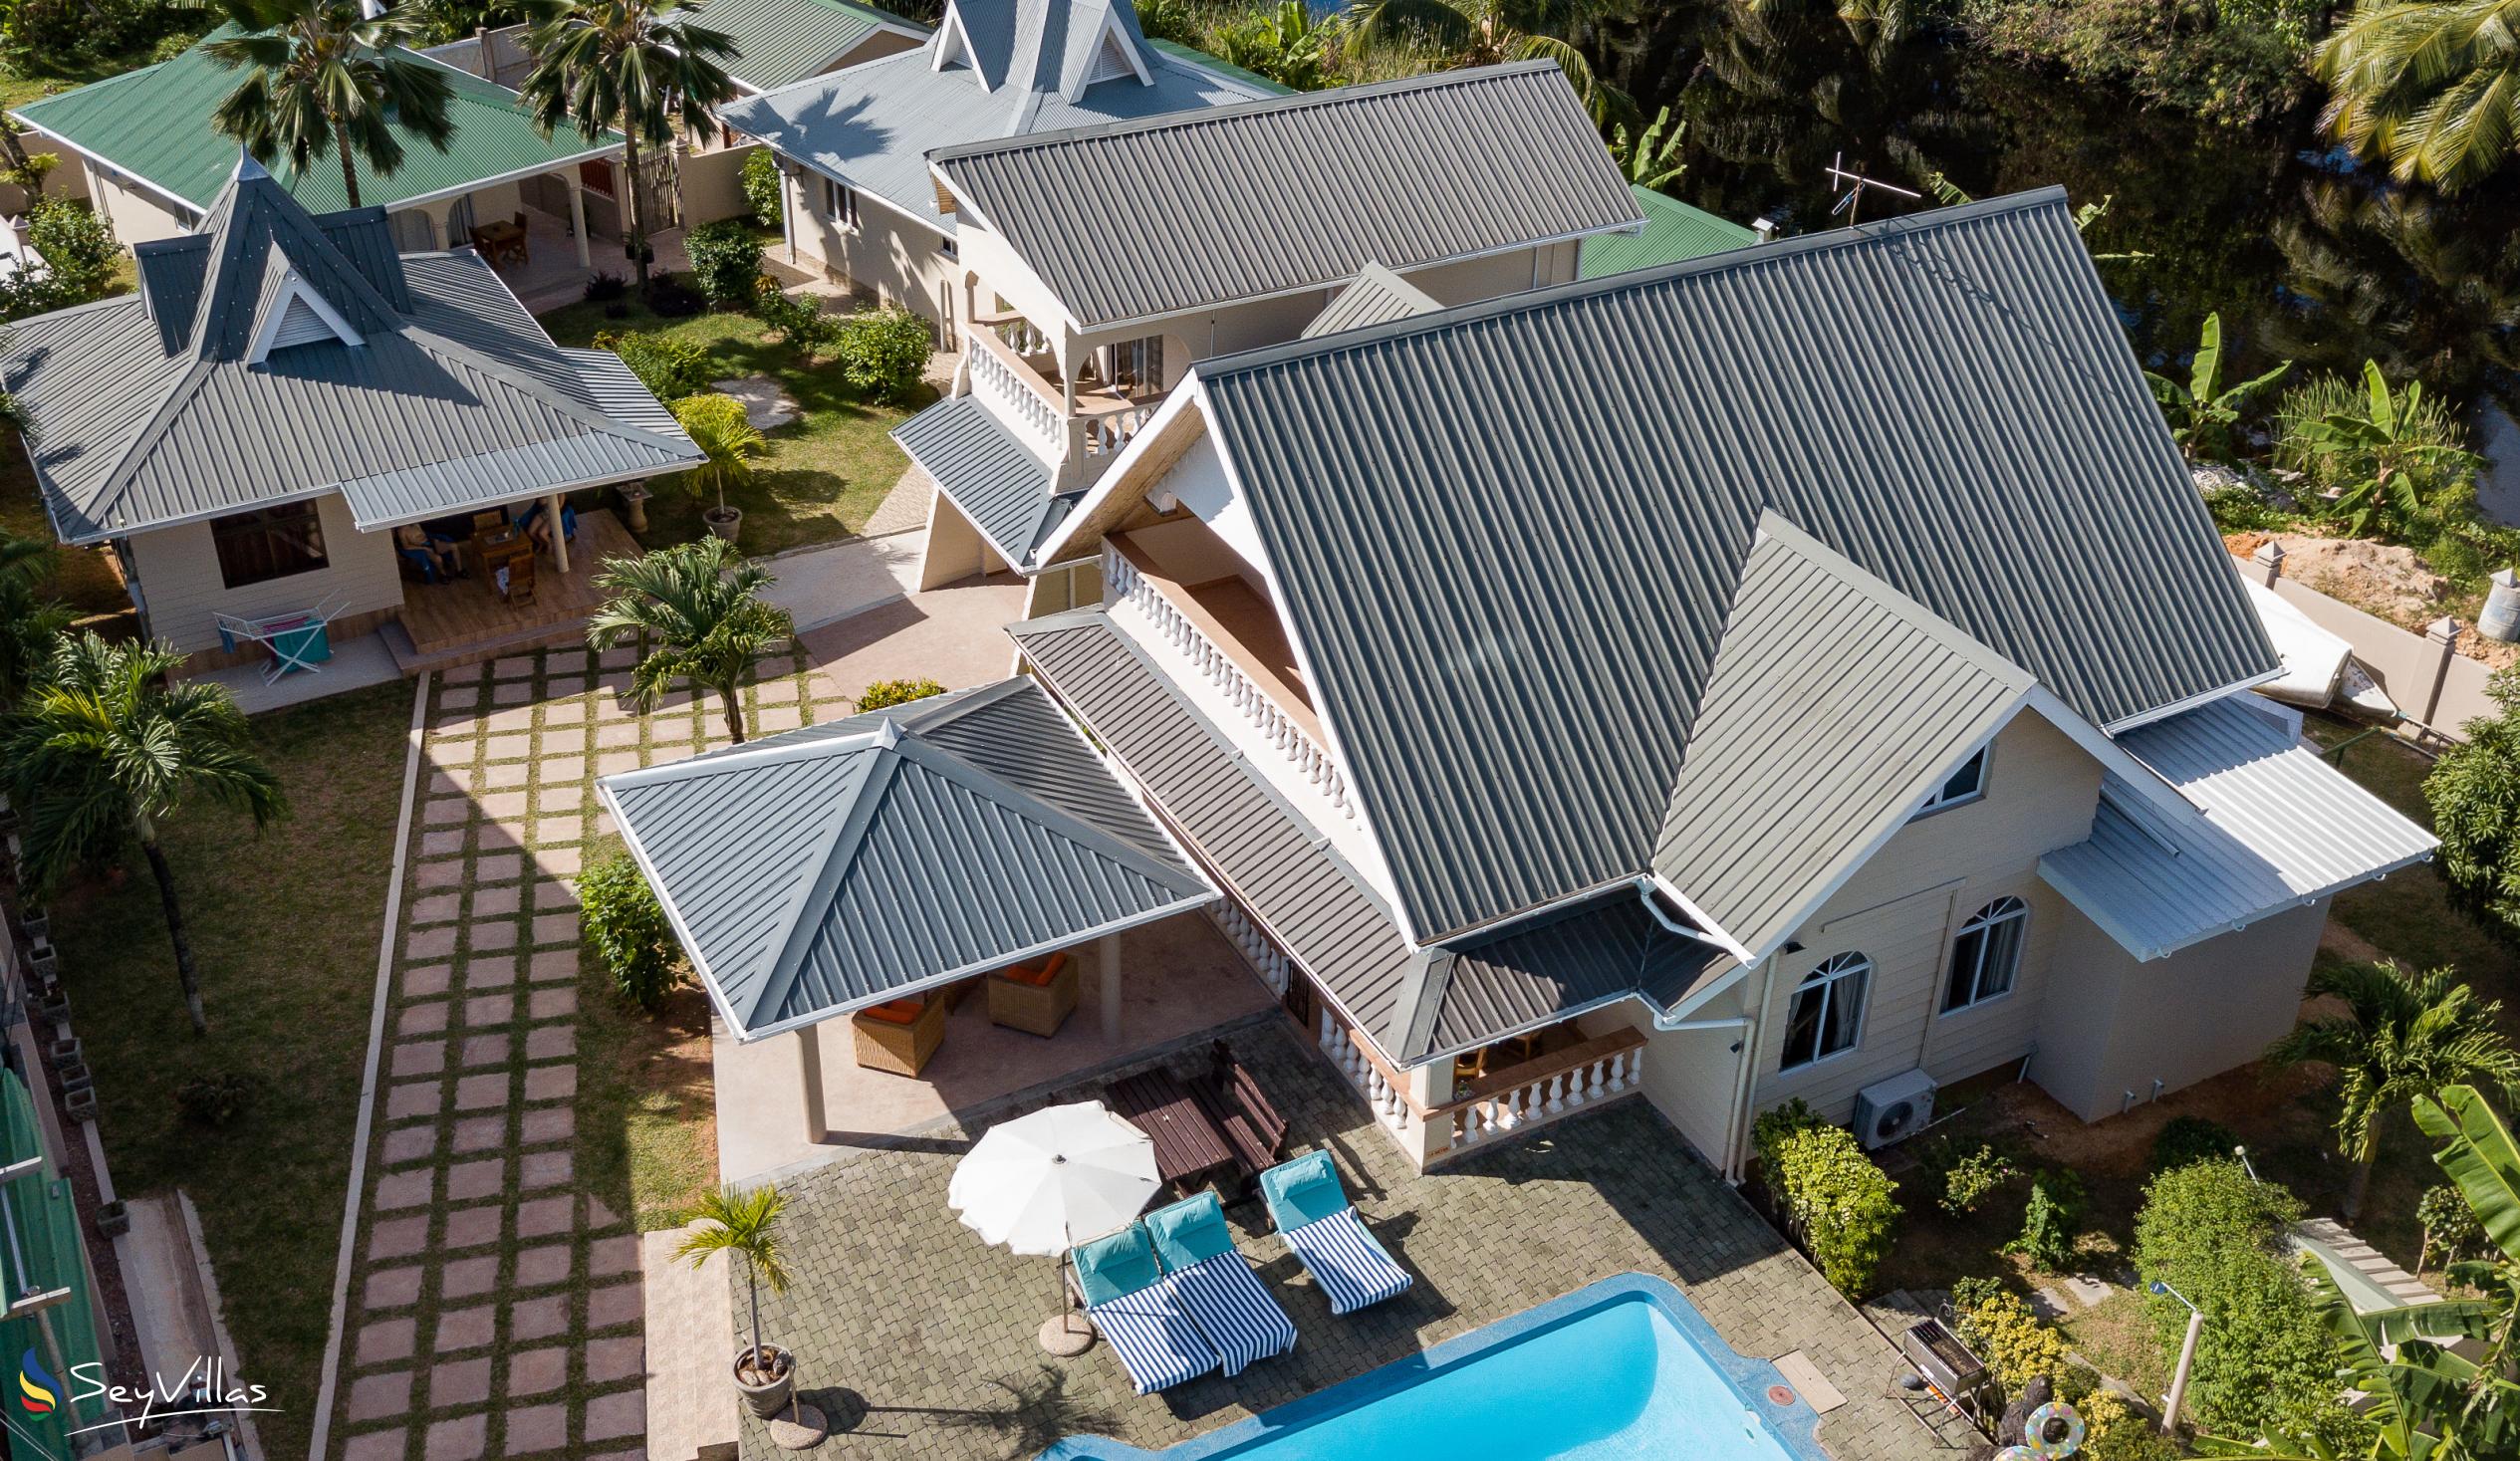 Foto 3: Villa Aya - Aussenbereich - Praslin (Seychellen)